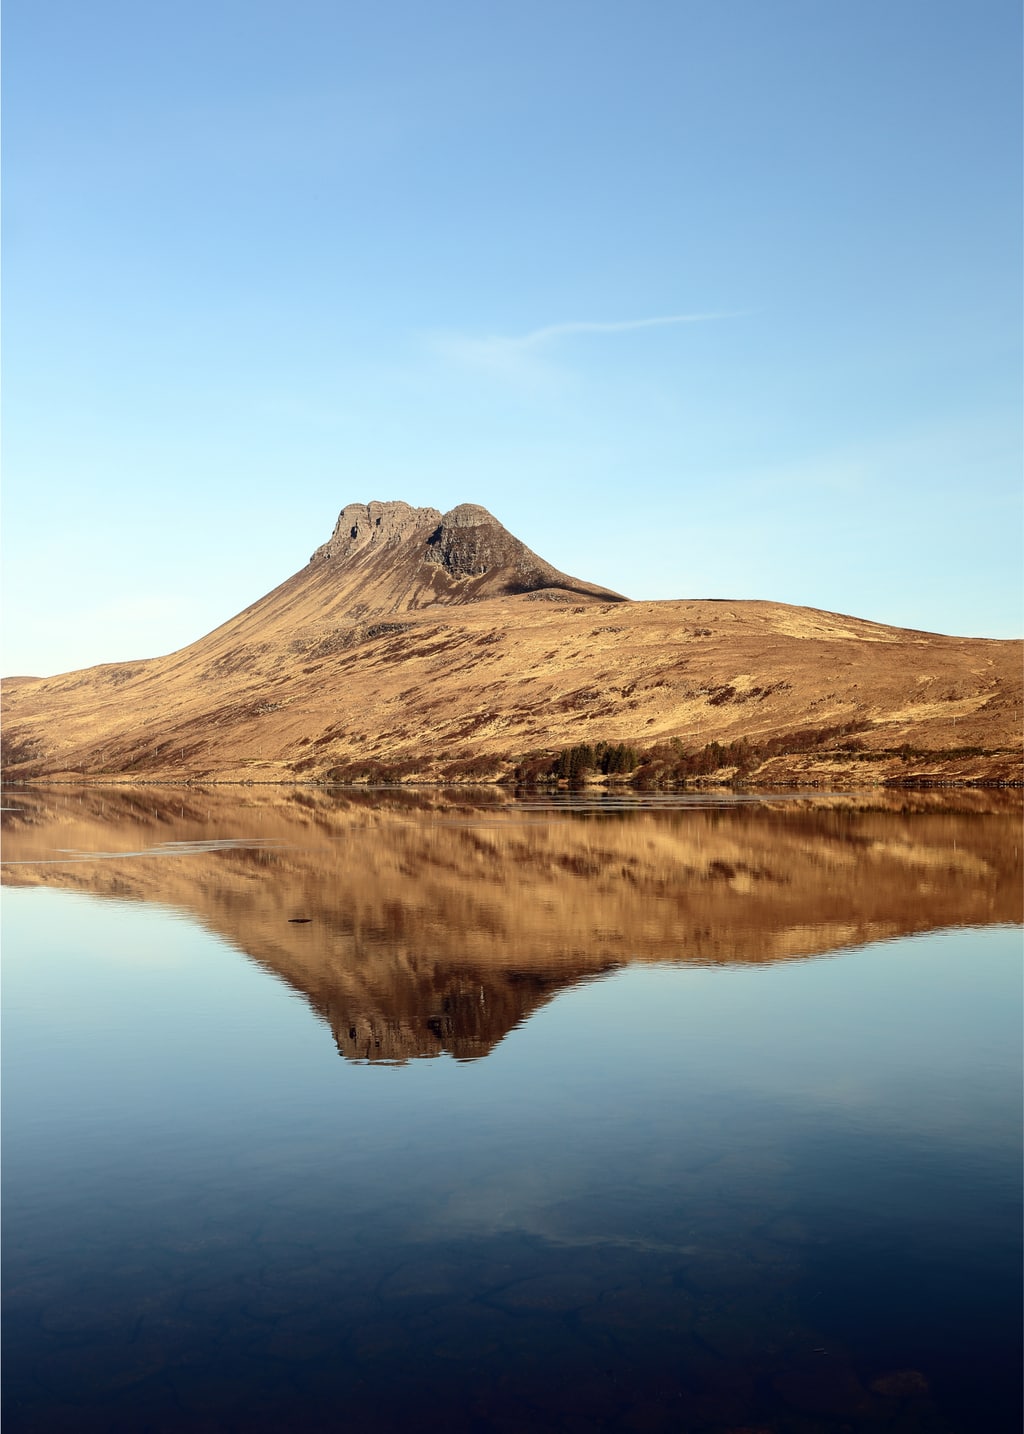 Stac Pollaidh Reflecting on Loch Lurgainn